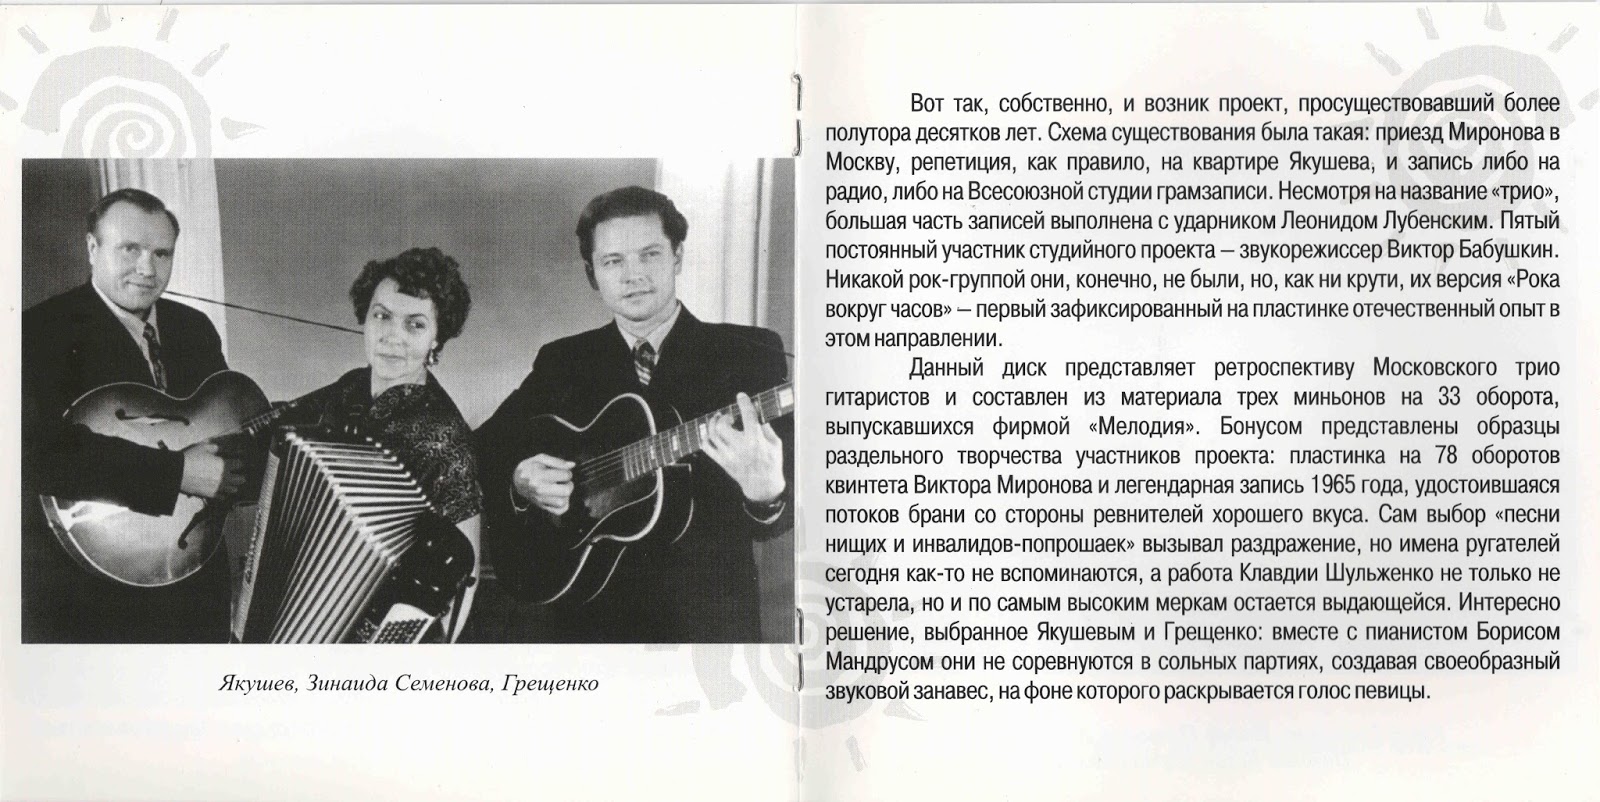 Московское трио. Московское трио гитаристов. Вечное солнце трио гитаристов. Московское трио гитаристов. Вечное солнце диск.